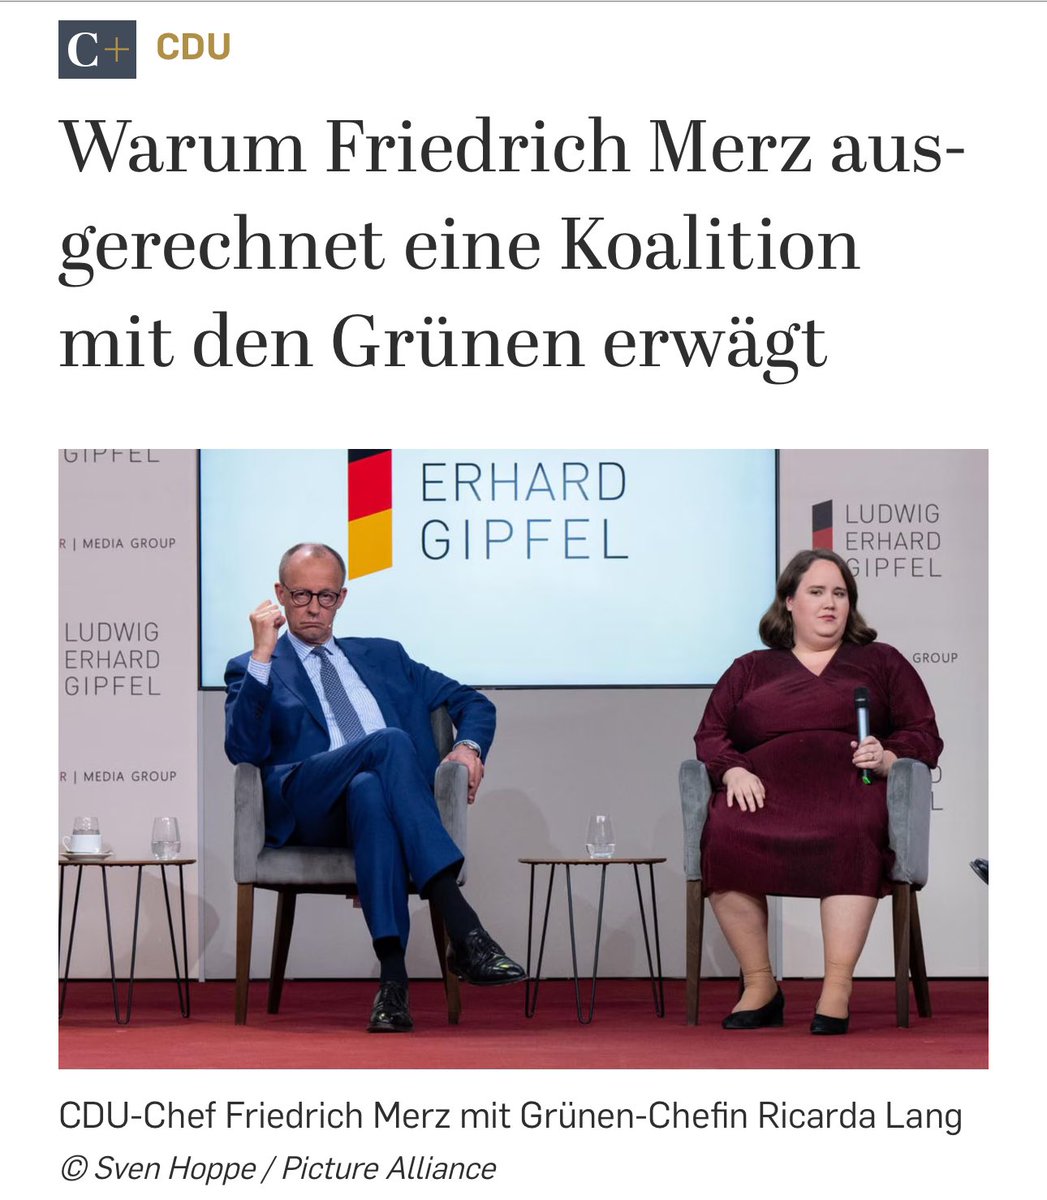 Das zeigt,daß im Hintergrund #Merkel immer noch die Fäden zieht.#Merz ist nur eine Marionette.Das möchte auch die Stammwählerschaft der #CDU ? 

flip.it/mXHbs3  

#NieMehrCDUCSU